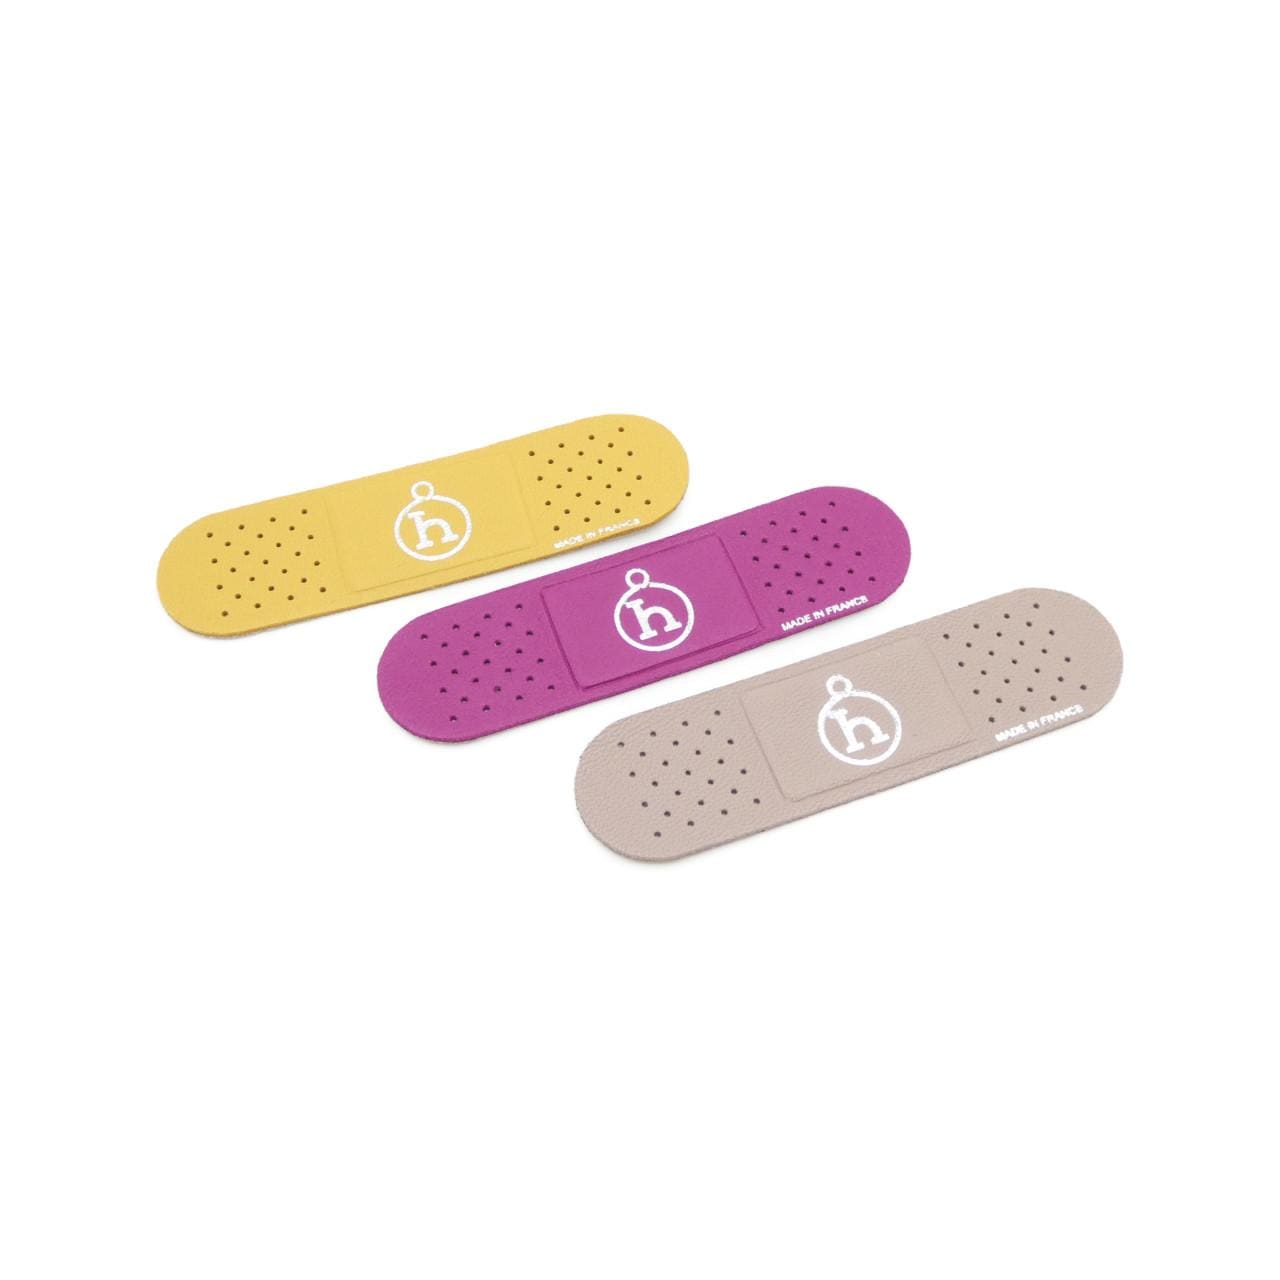 [Unused items] HERMES Band-Aid 1069198 Sticker